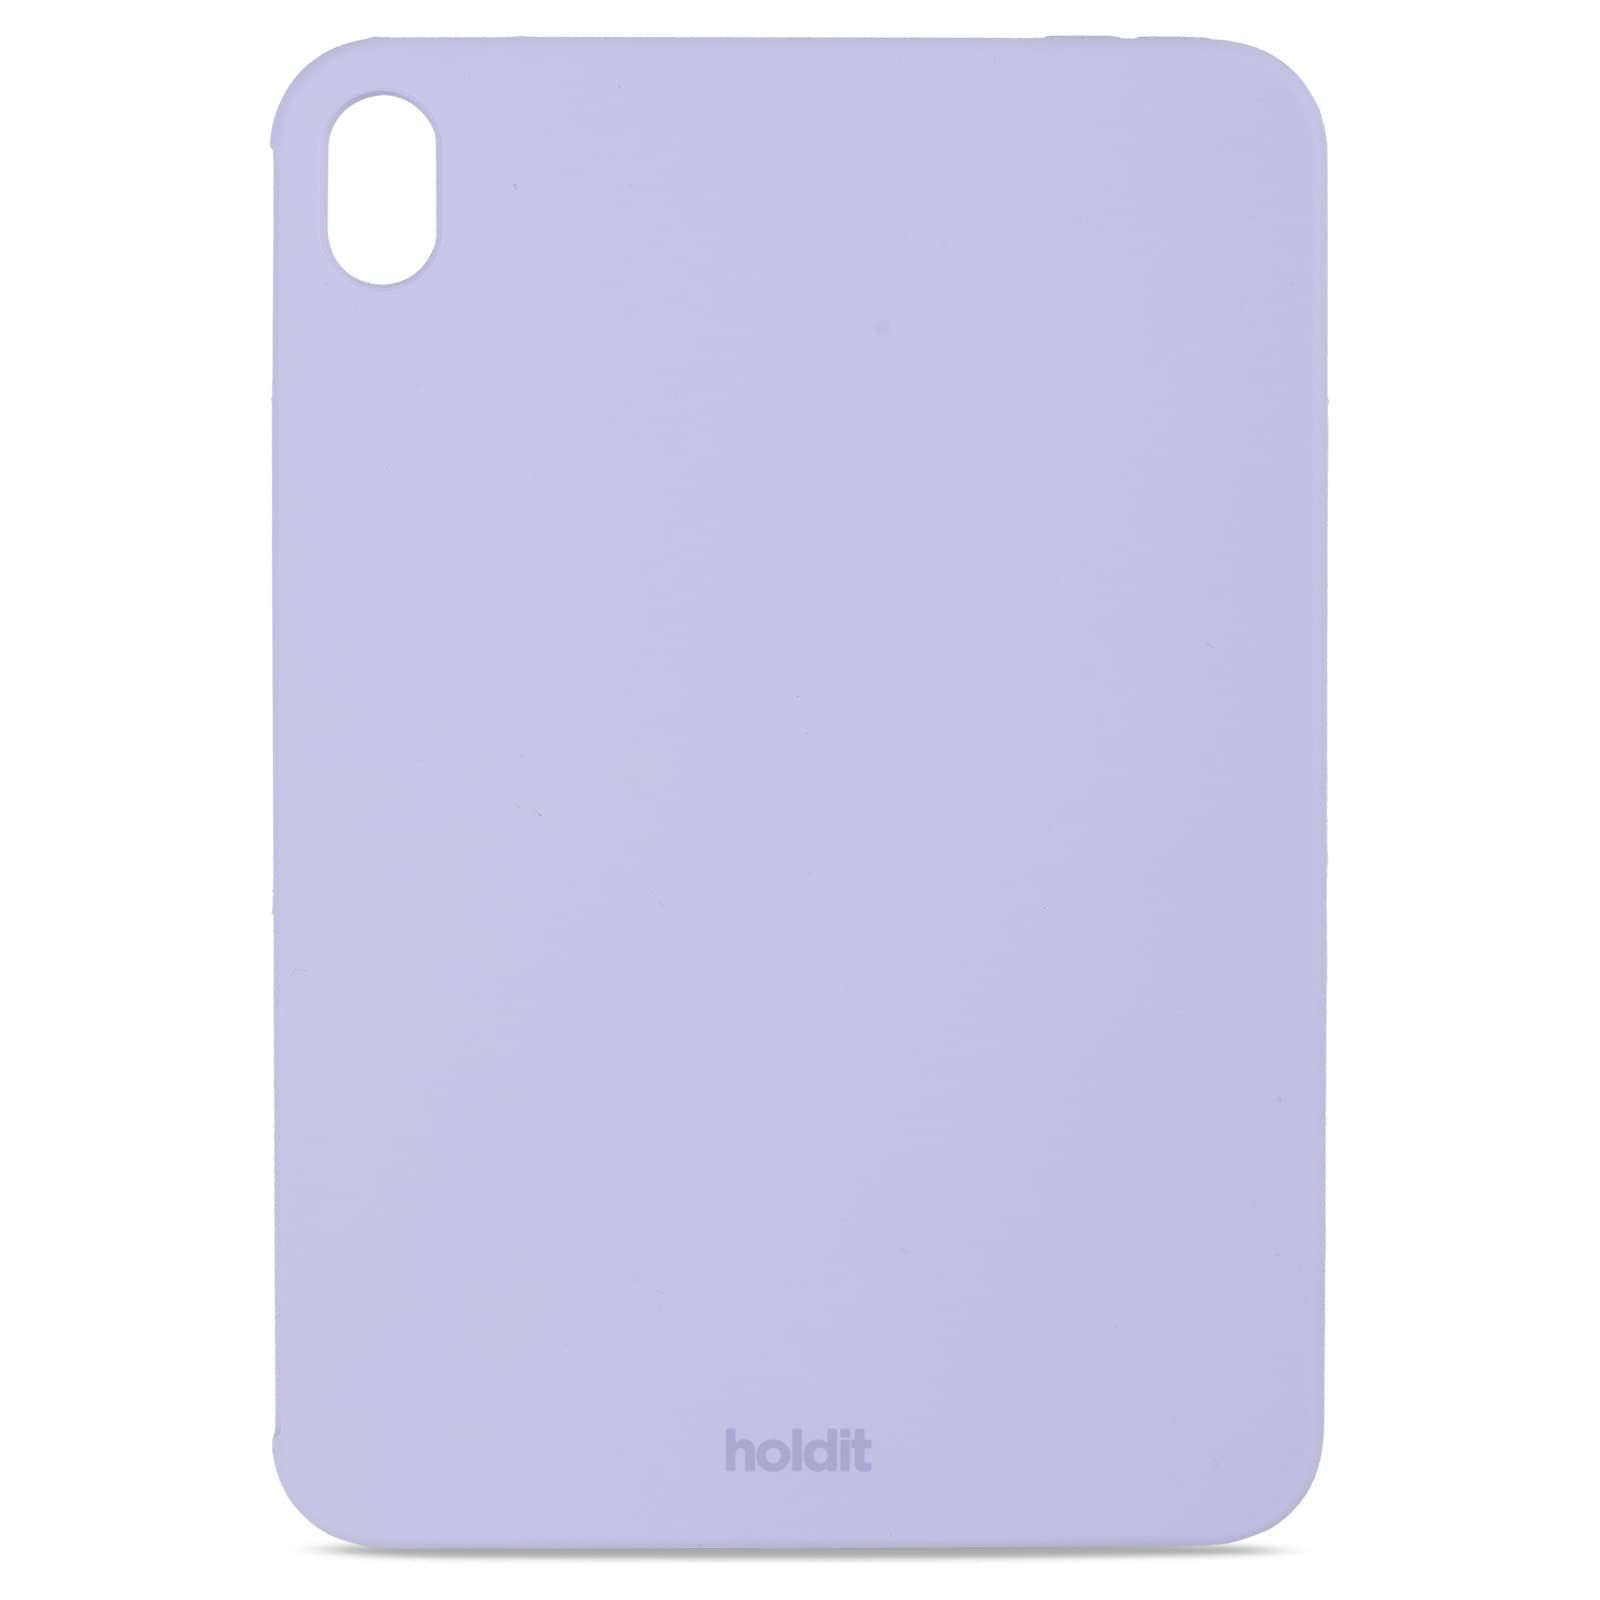 【在庫処分】Holdit iPad mini 第6世代 mini6 ケース シリコン カバー 軽量 耐衝撃 かわいい おしゃれ ラベンダー パープル  紫 ケースカバー グリップ機能 保護 8.3インチ iPadmini6 15476